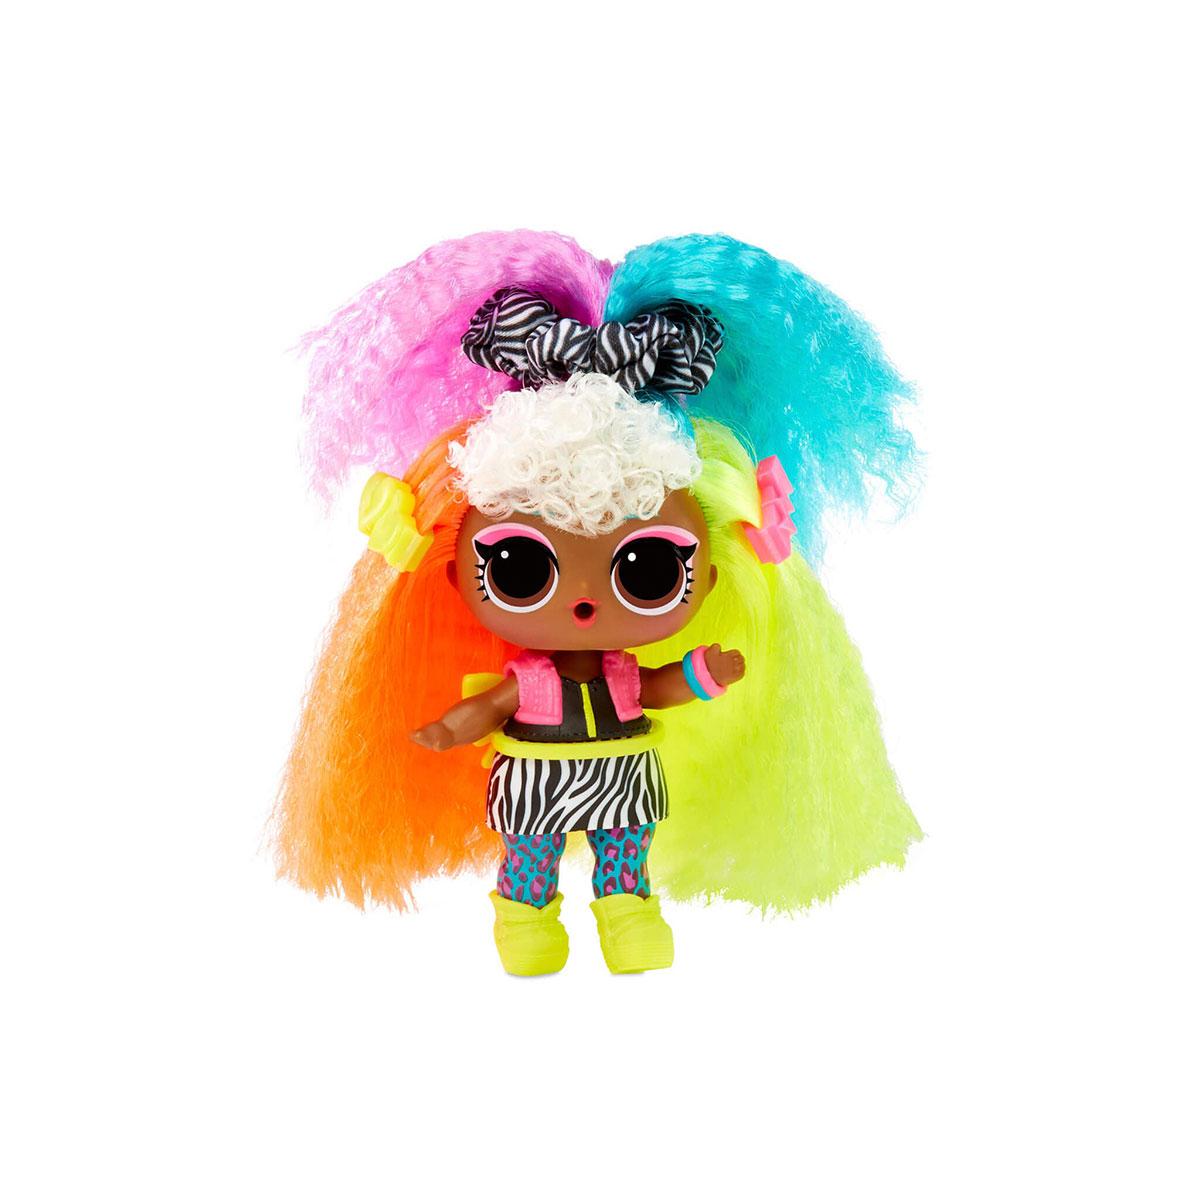 Игровой набор с куклой L.O.L. Surprise! Hair Hair Hair  Стильные прически, 580348, LOL Surprise, ЛОЛ